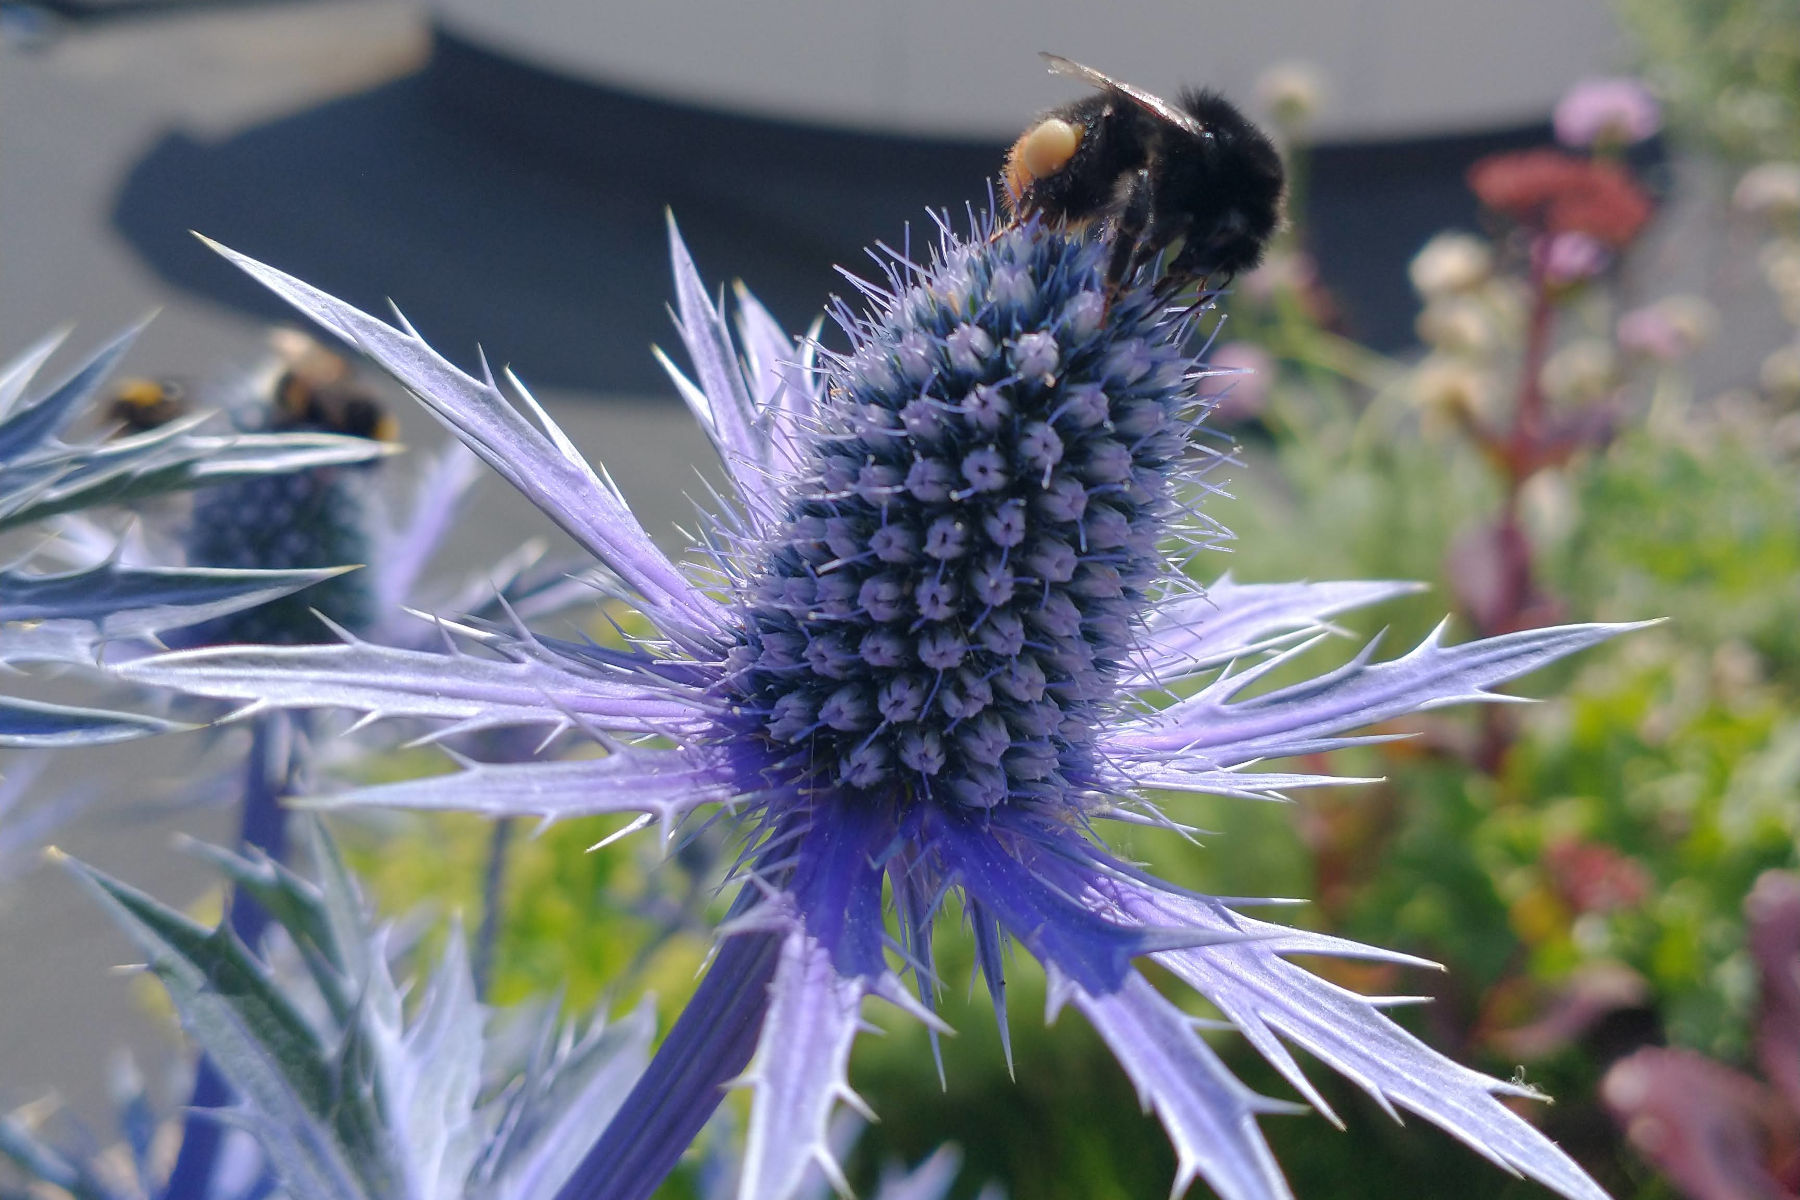 Tagtomat skaber biodiversitet i byen med selvvandende plantekasser. Her sidder en bi på en lilla blomst.